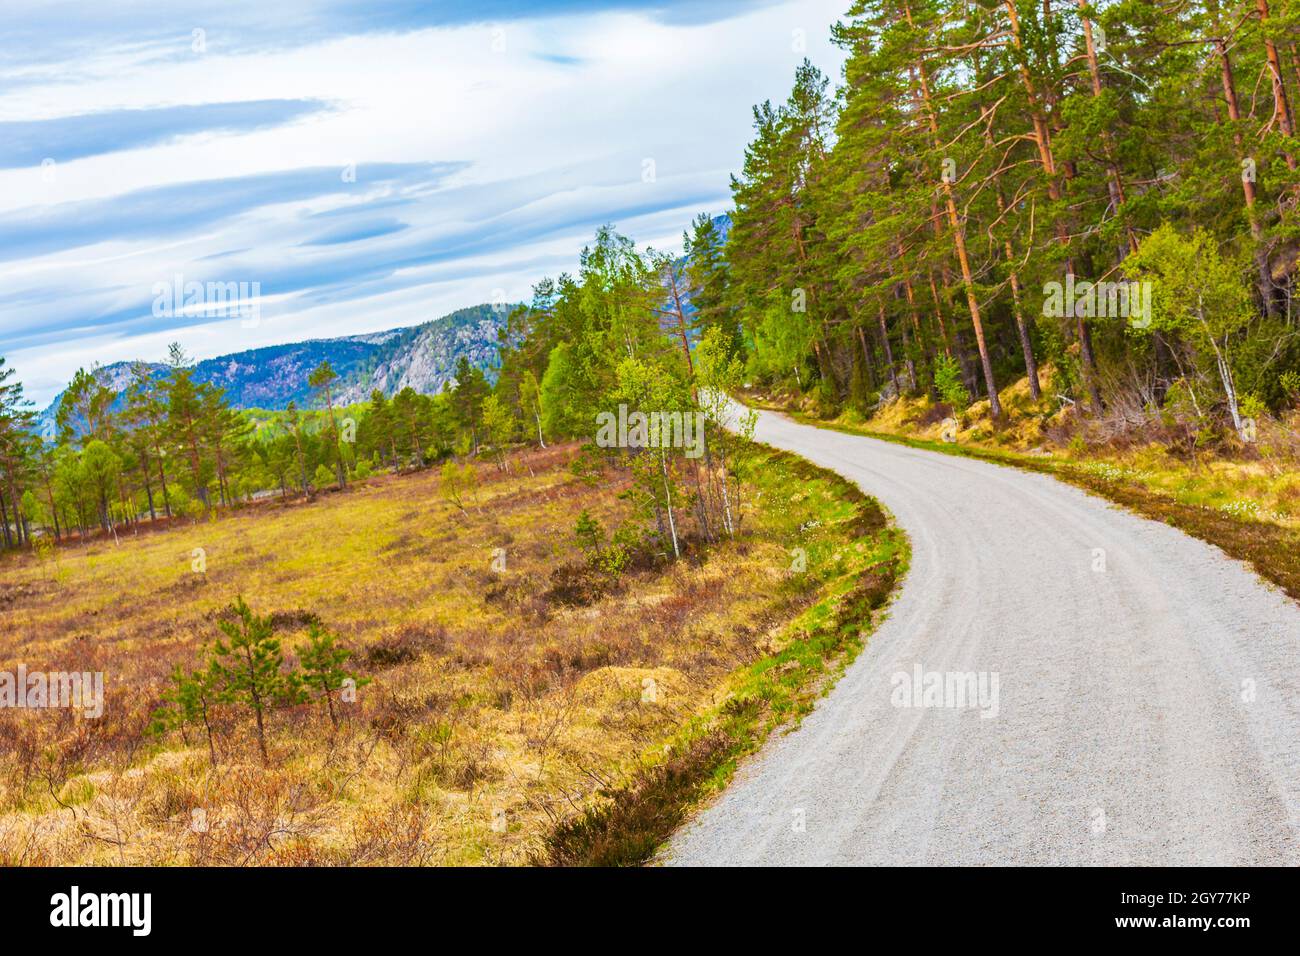 Randonnée chemin de randonnée chemin de chemin vers les montagnes nature forêts et paysage Nissedal Norvège. Banque D'Images